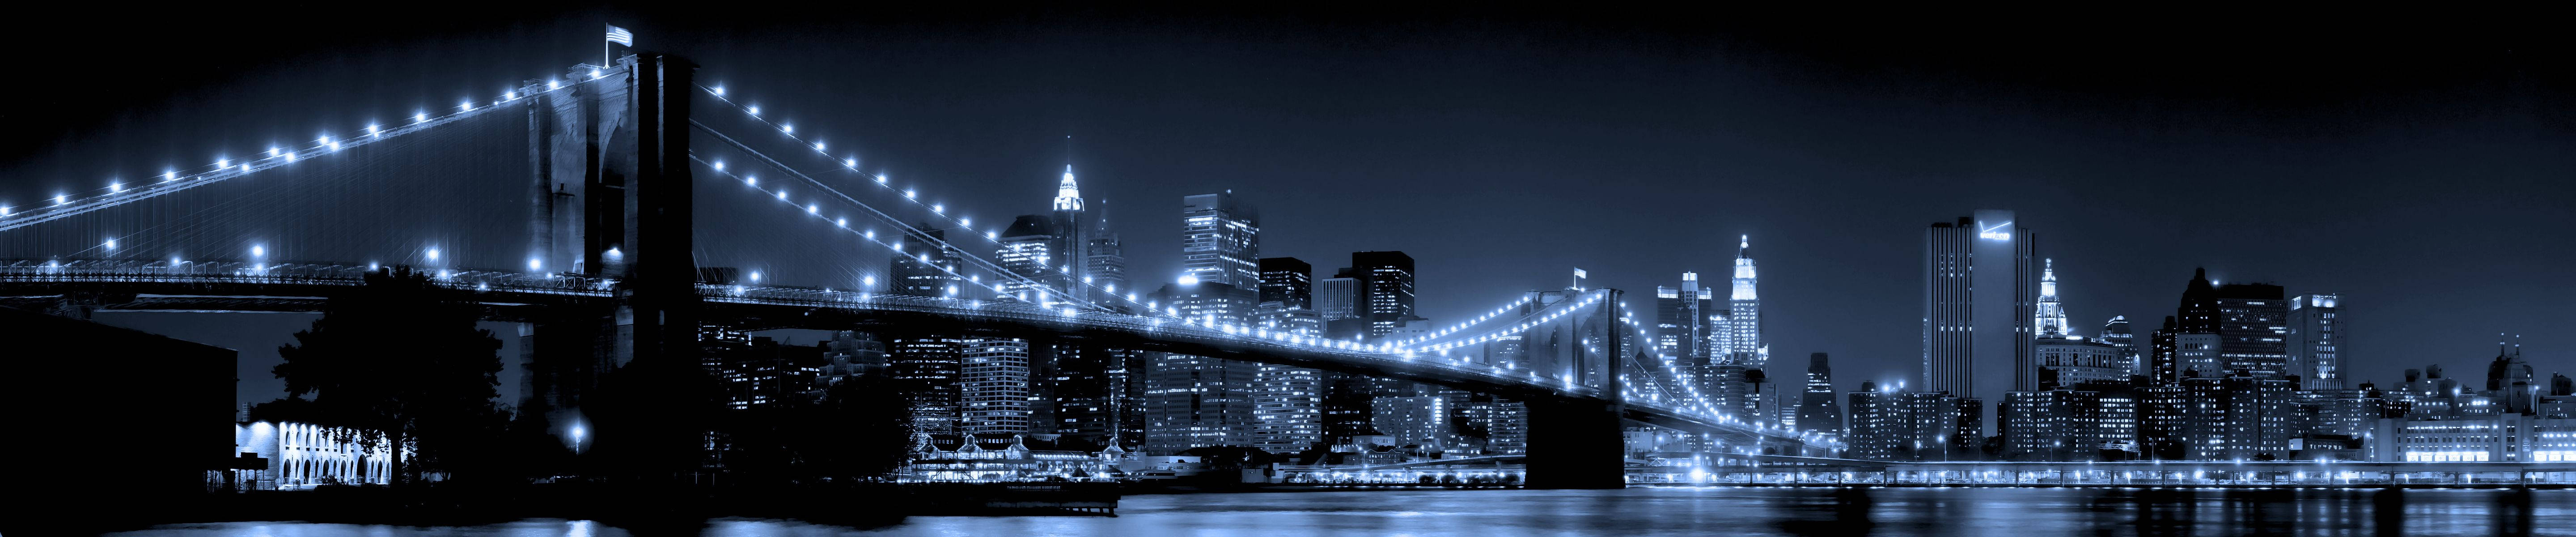 Brooklyn Bridge At Night Three Screen Wallpaper